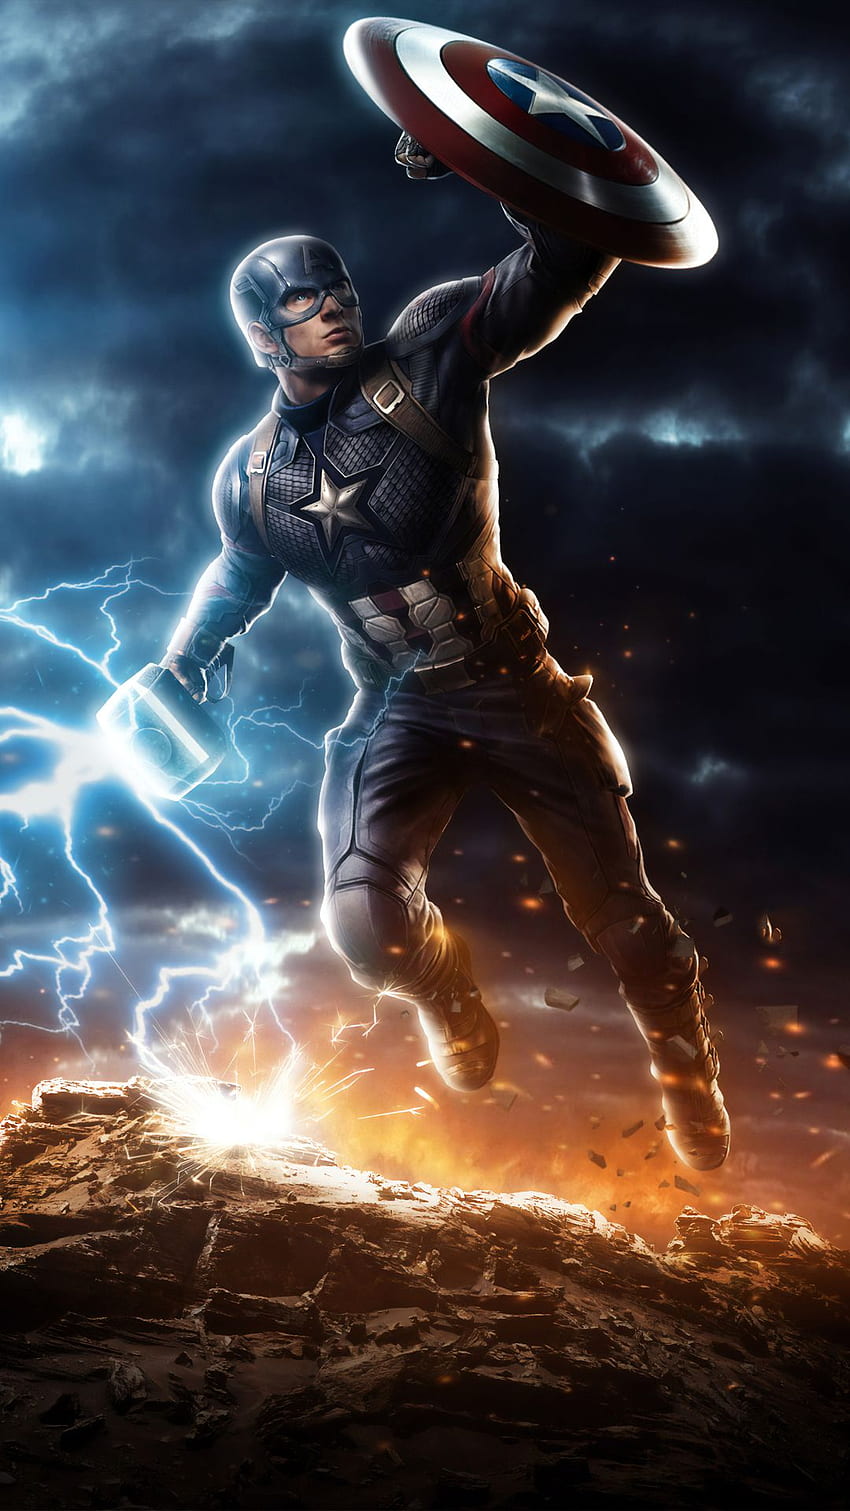 Captain America - Worthy  Marvel captain america, Captain america  wallpaper, Avengers art